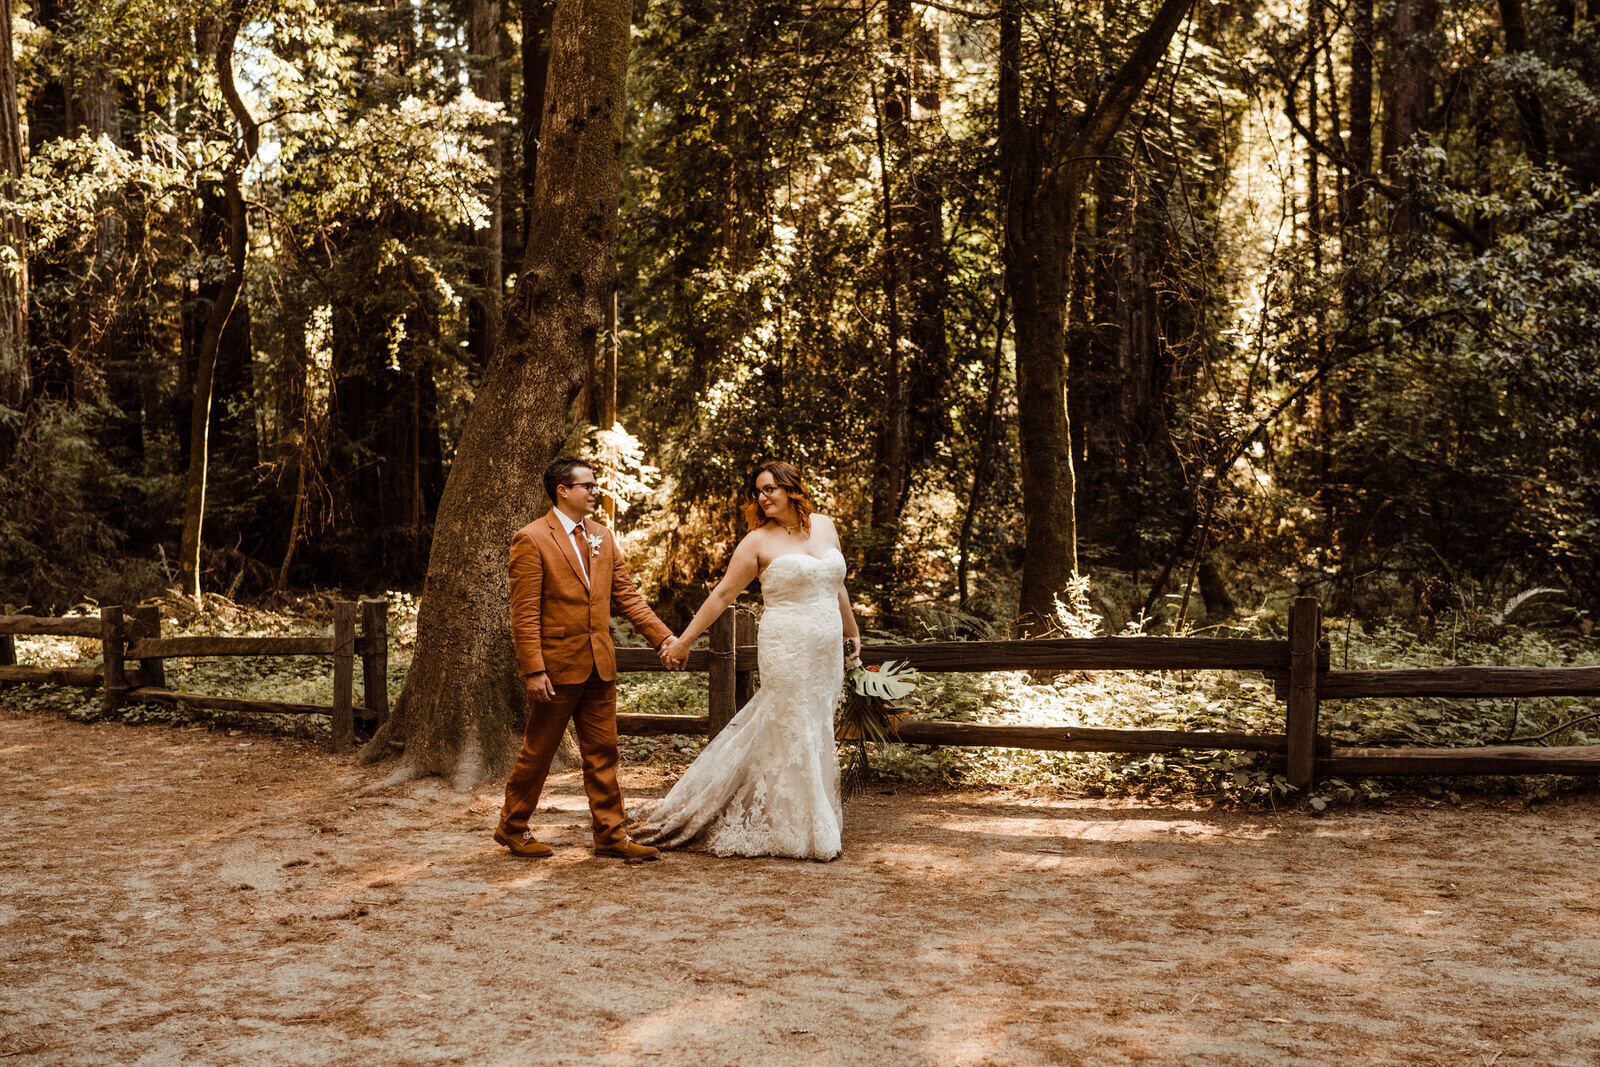 Henry-Cowell-Redwoods-State-Park-Wedding-Santa-Cruz-Bride-in-Strapless-Dress-Leading-Groom-in-Rust-Orange-Suit.jpg